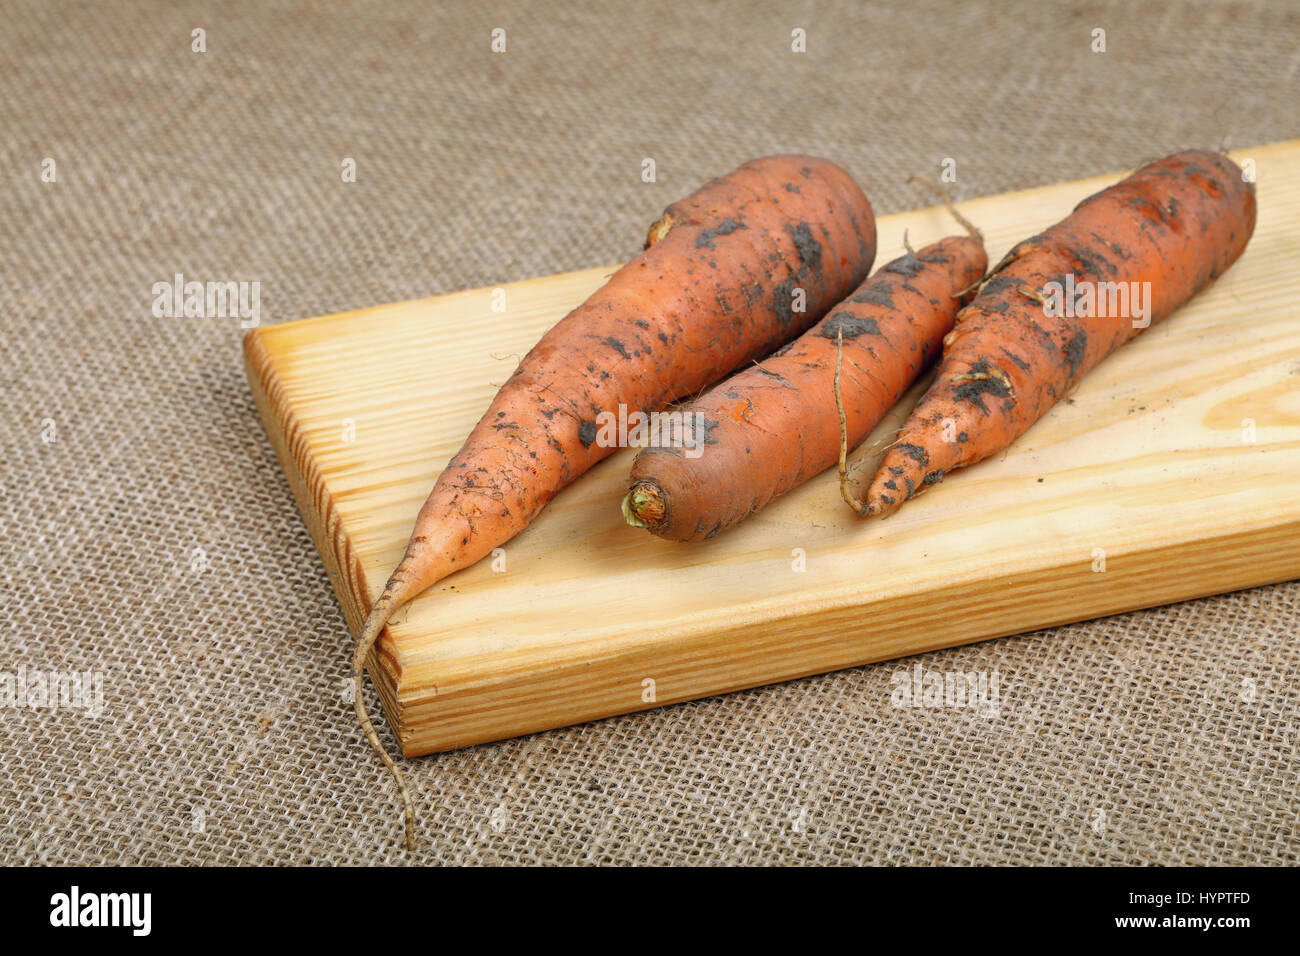 Tres zanahorias sucio fresca cruda con el suelo rústico de madera placa de corte picado sobre lienzo de cerca un alto ángulo de visualización Foto de stock